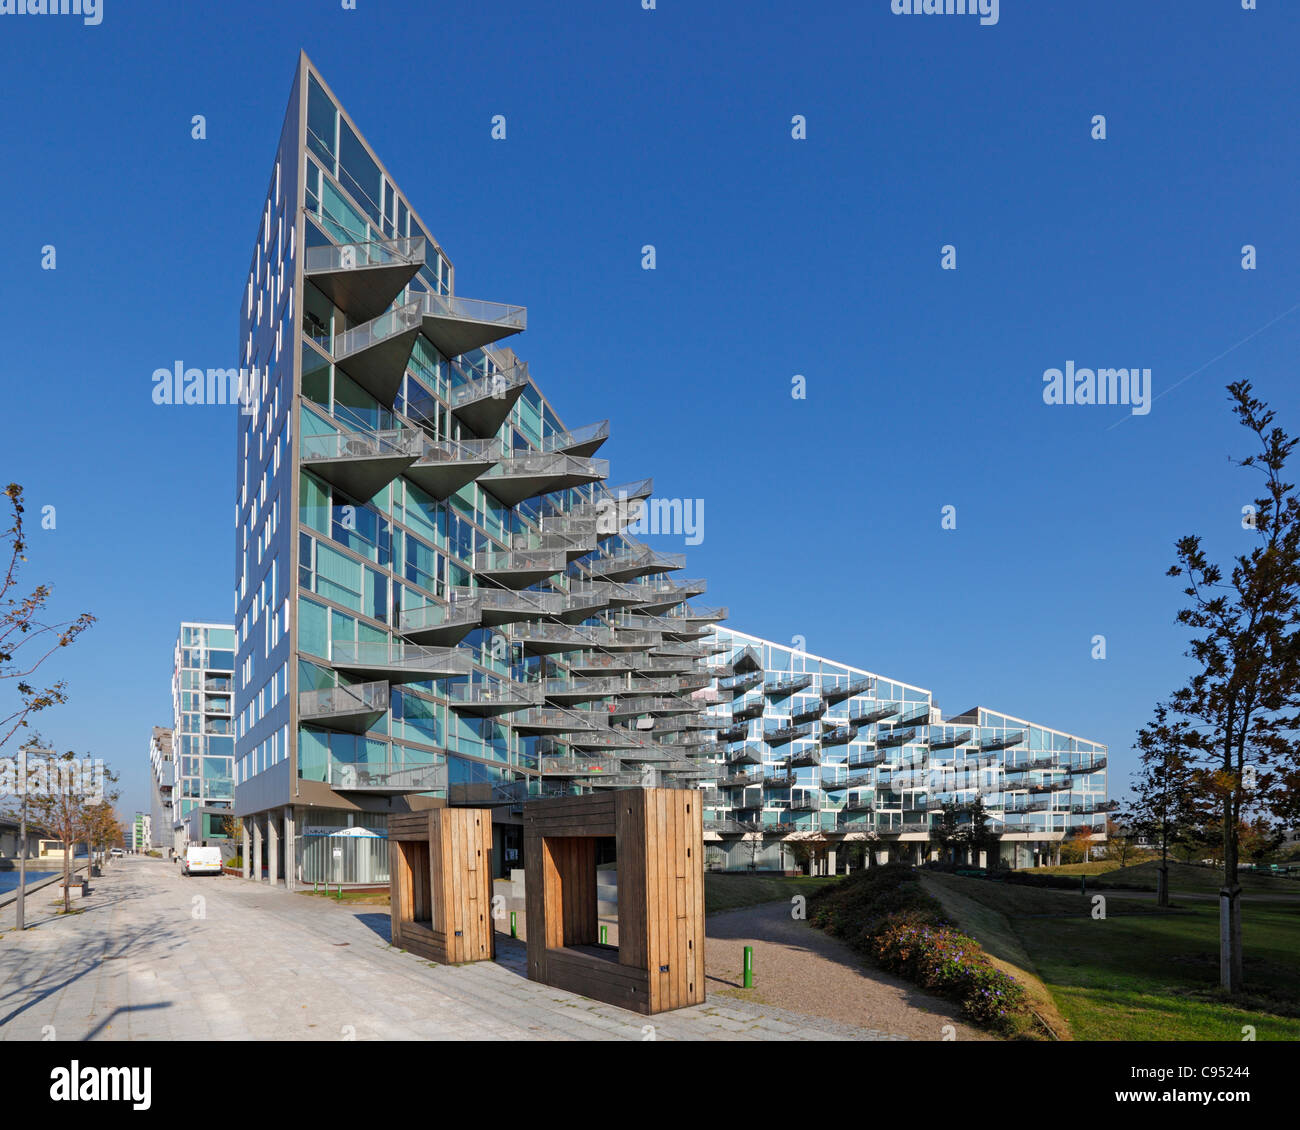 El edificio Husene VM - Ganador del premio edificio residencial de Ørestad, Amager, Copenhague, Dinamarca. Arquitectos Bjarke Ingels y Julien de Smedt parcela Foto de stock